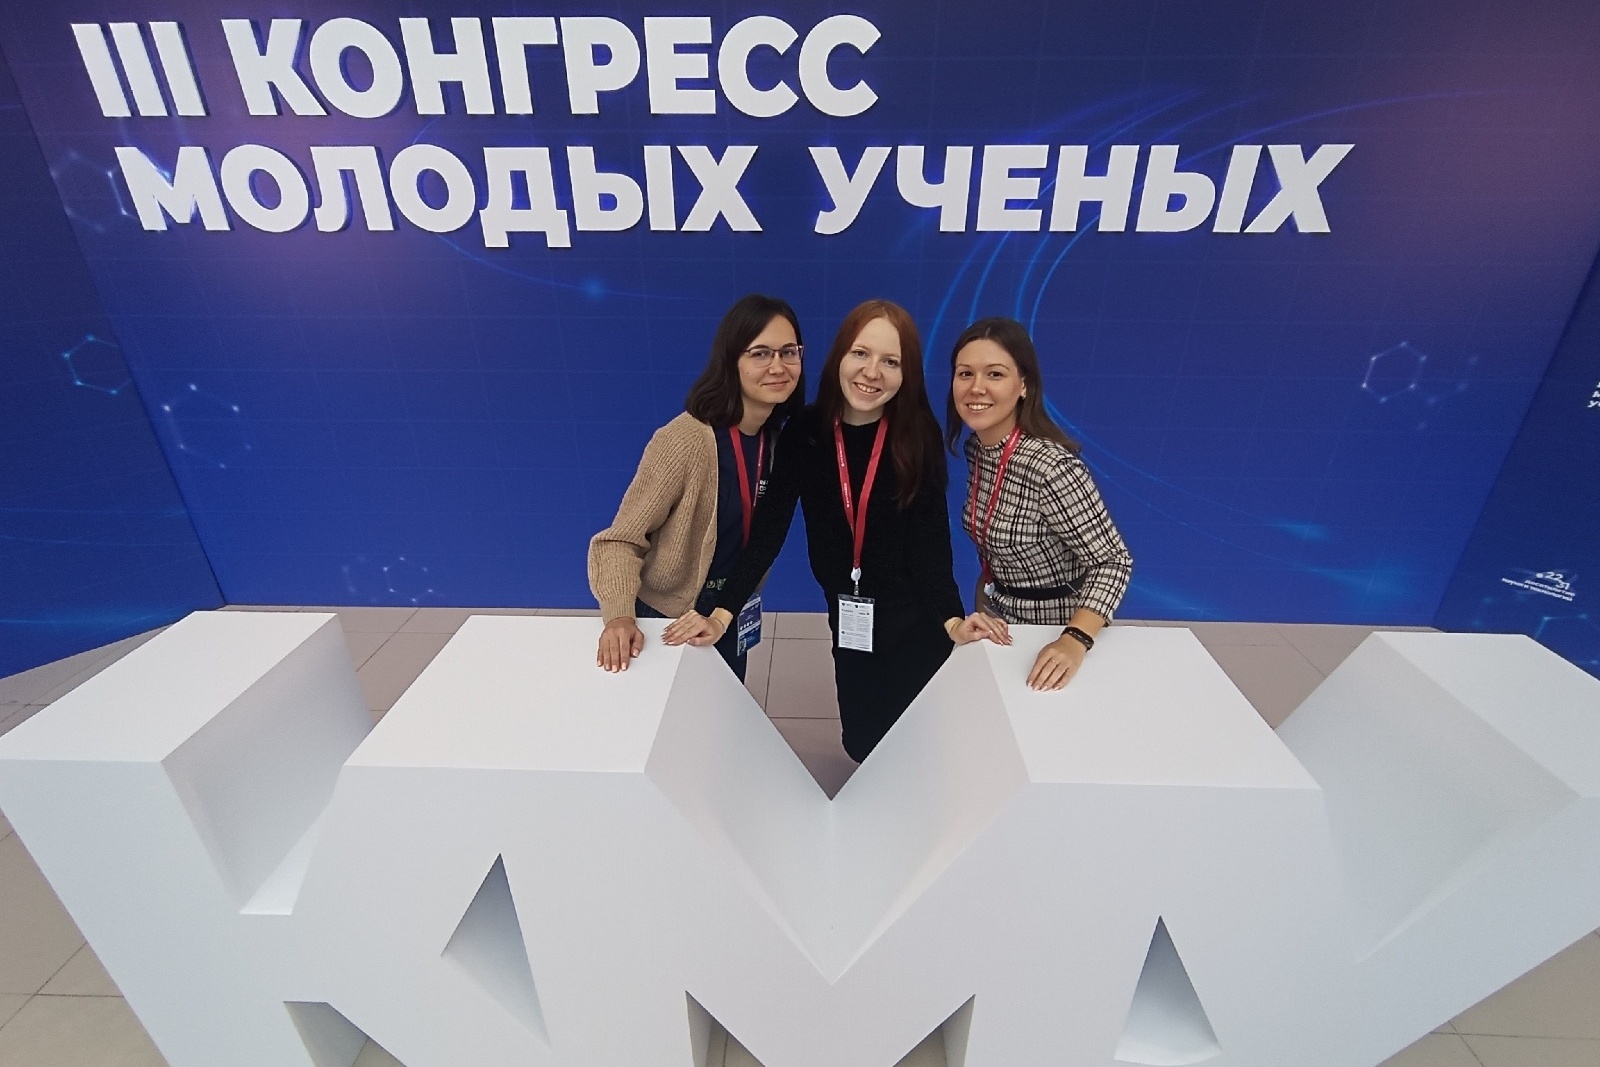 Преподаватели и студенты Мининского университета стали участниками Конгресса молодых ученых